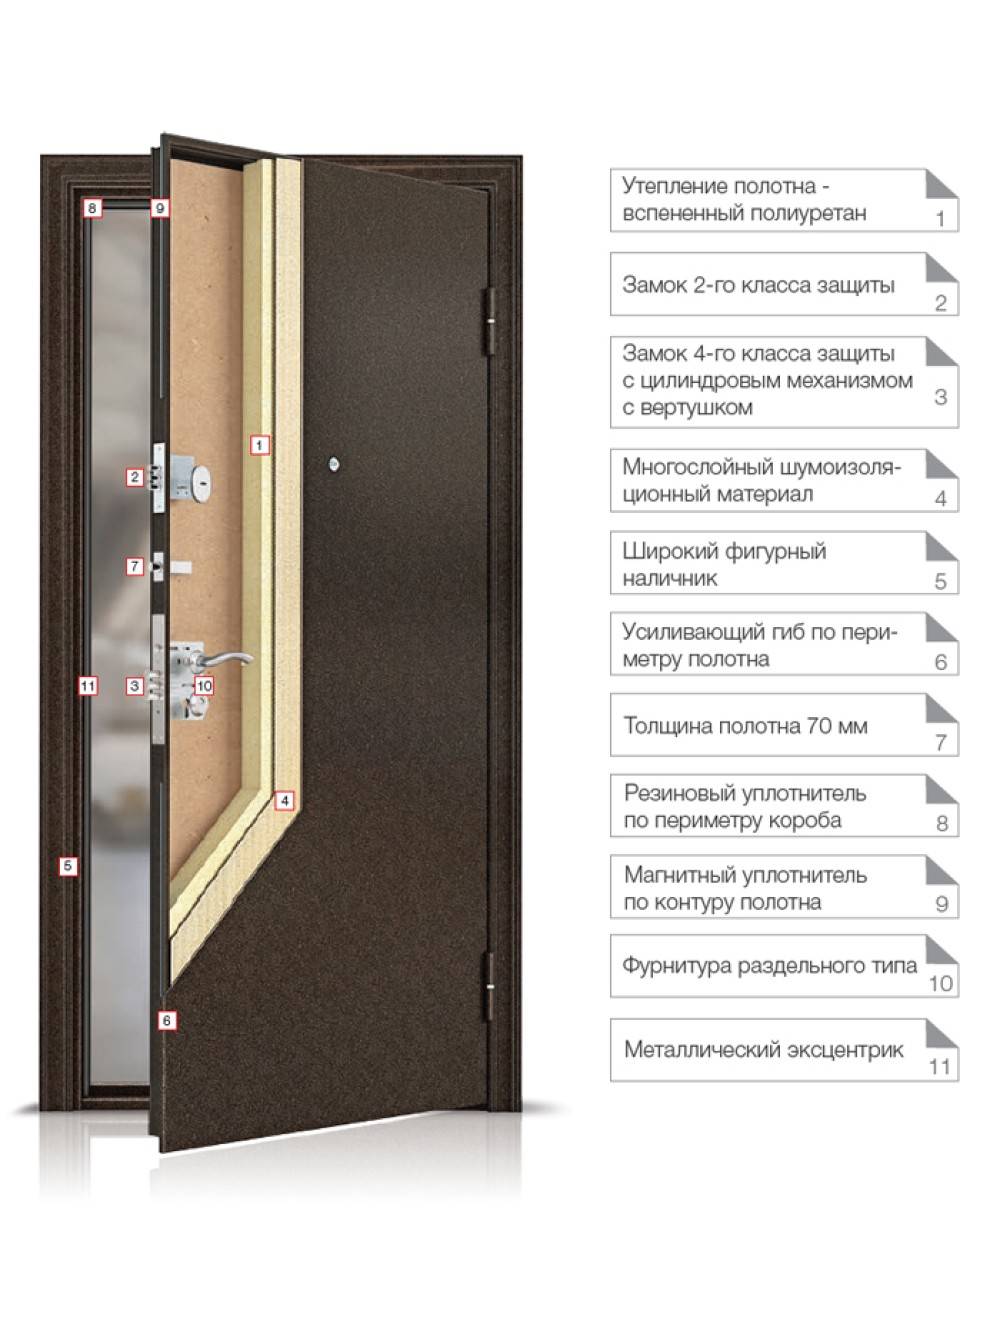 Недорогие металлические входные двери. какую лучше выбрать? | ???? выбираем лучшее | дзен